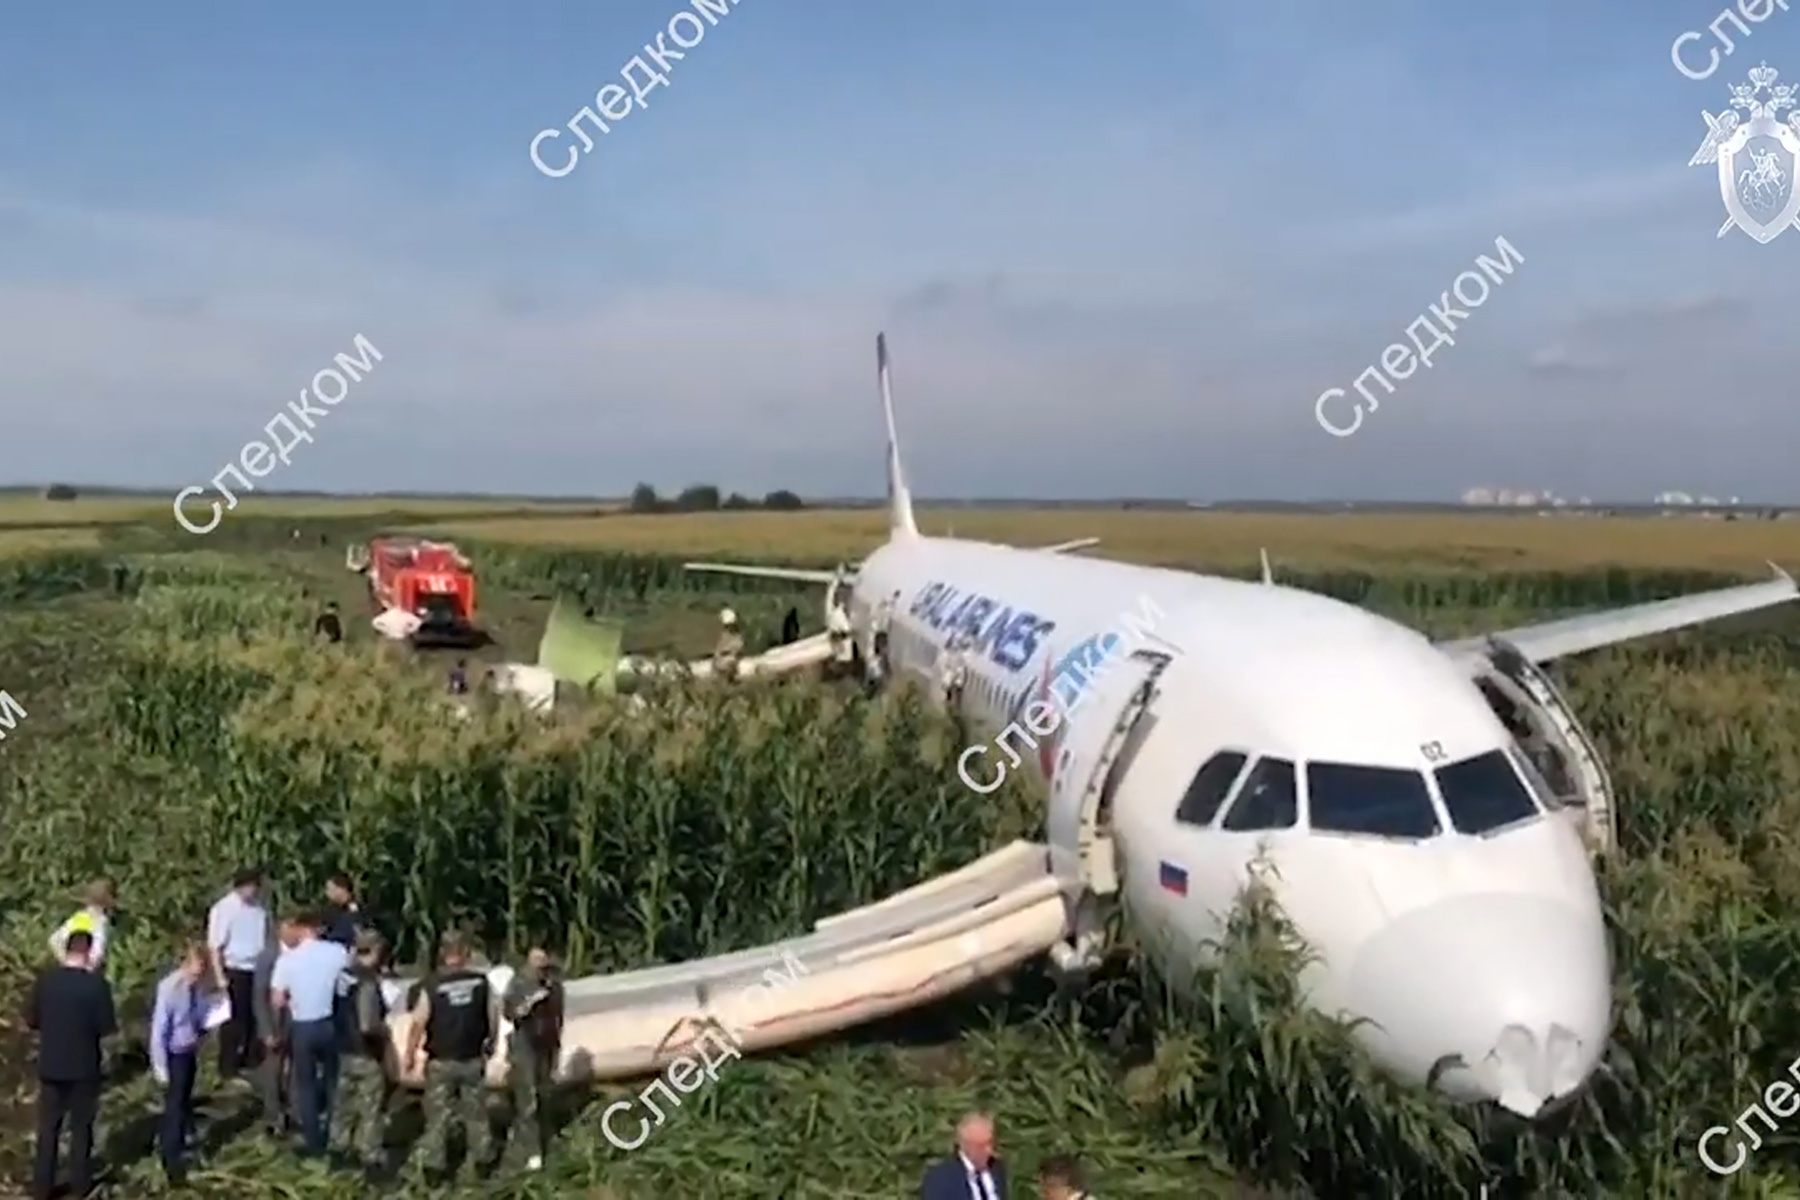 Дамир Юсупов посадил самолет на кукурузное поле